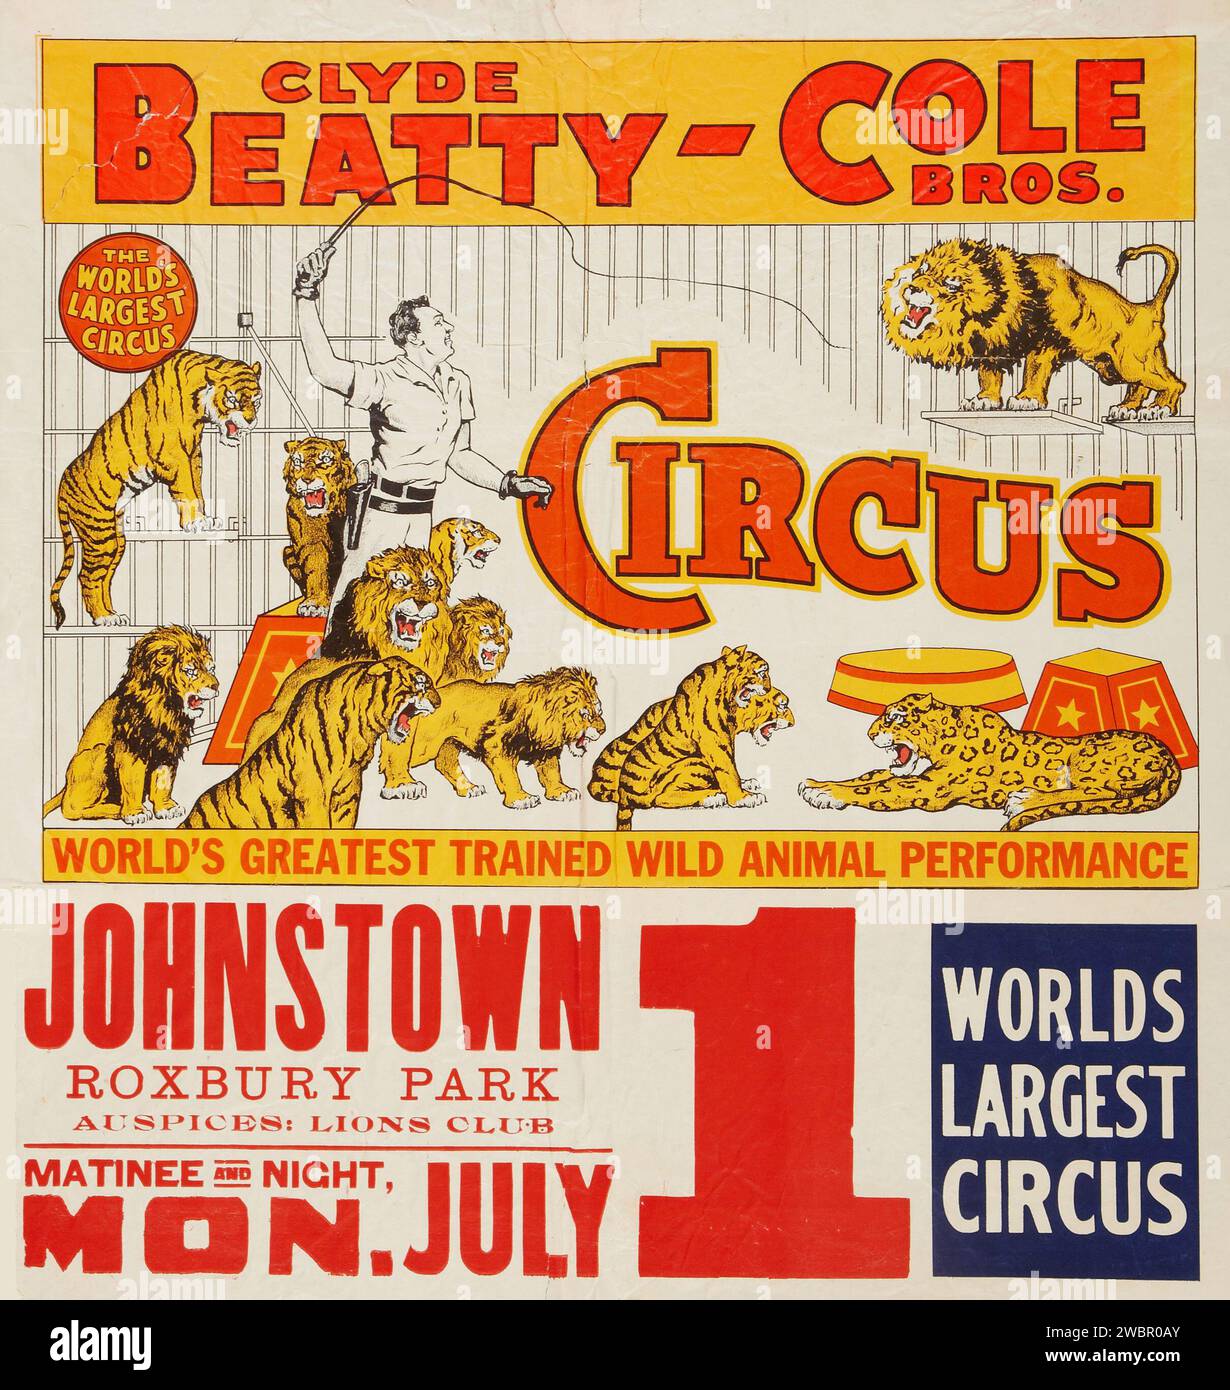 Allenatore di animali selvatici Clyde Beatty - Cole Brothers Circus (Johnstown, Roxbury Park, 1 luglio 1957). Poster del circo Foto Stock